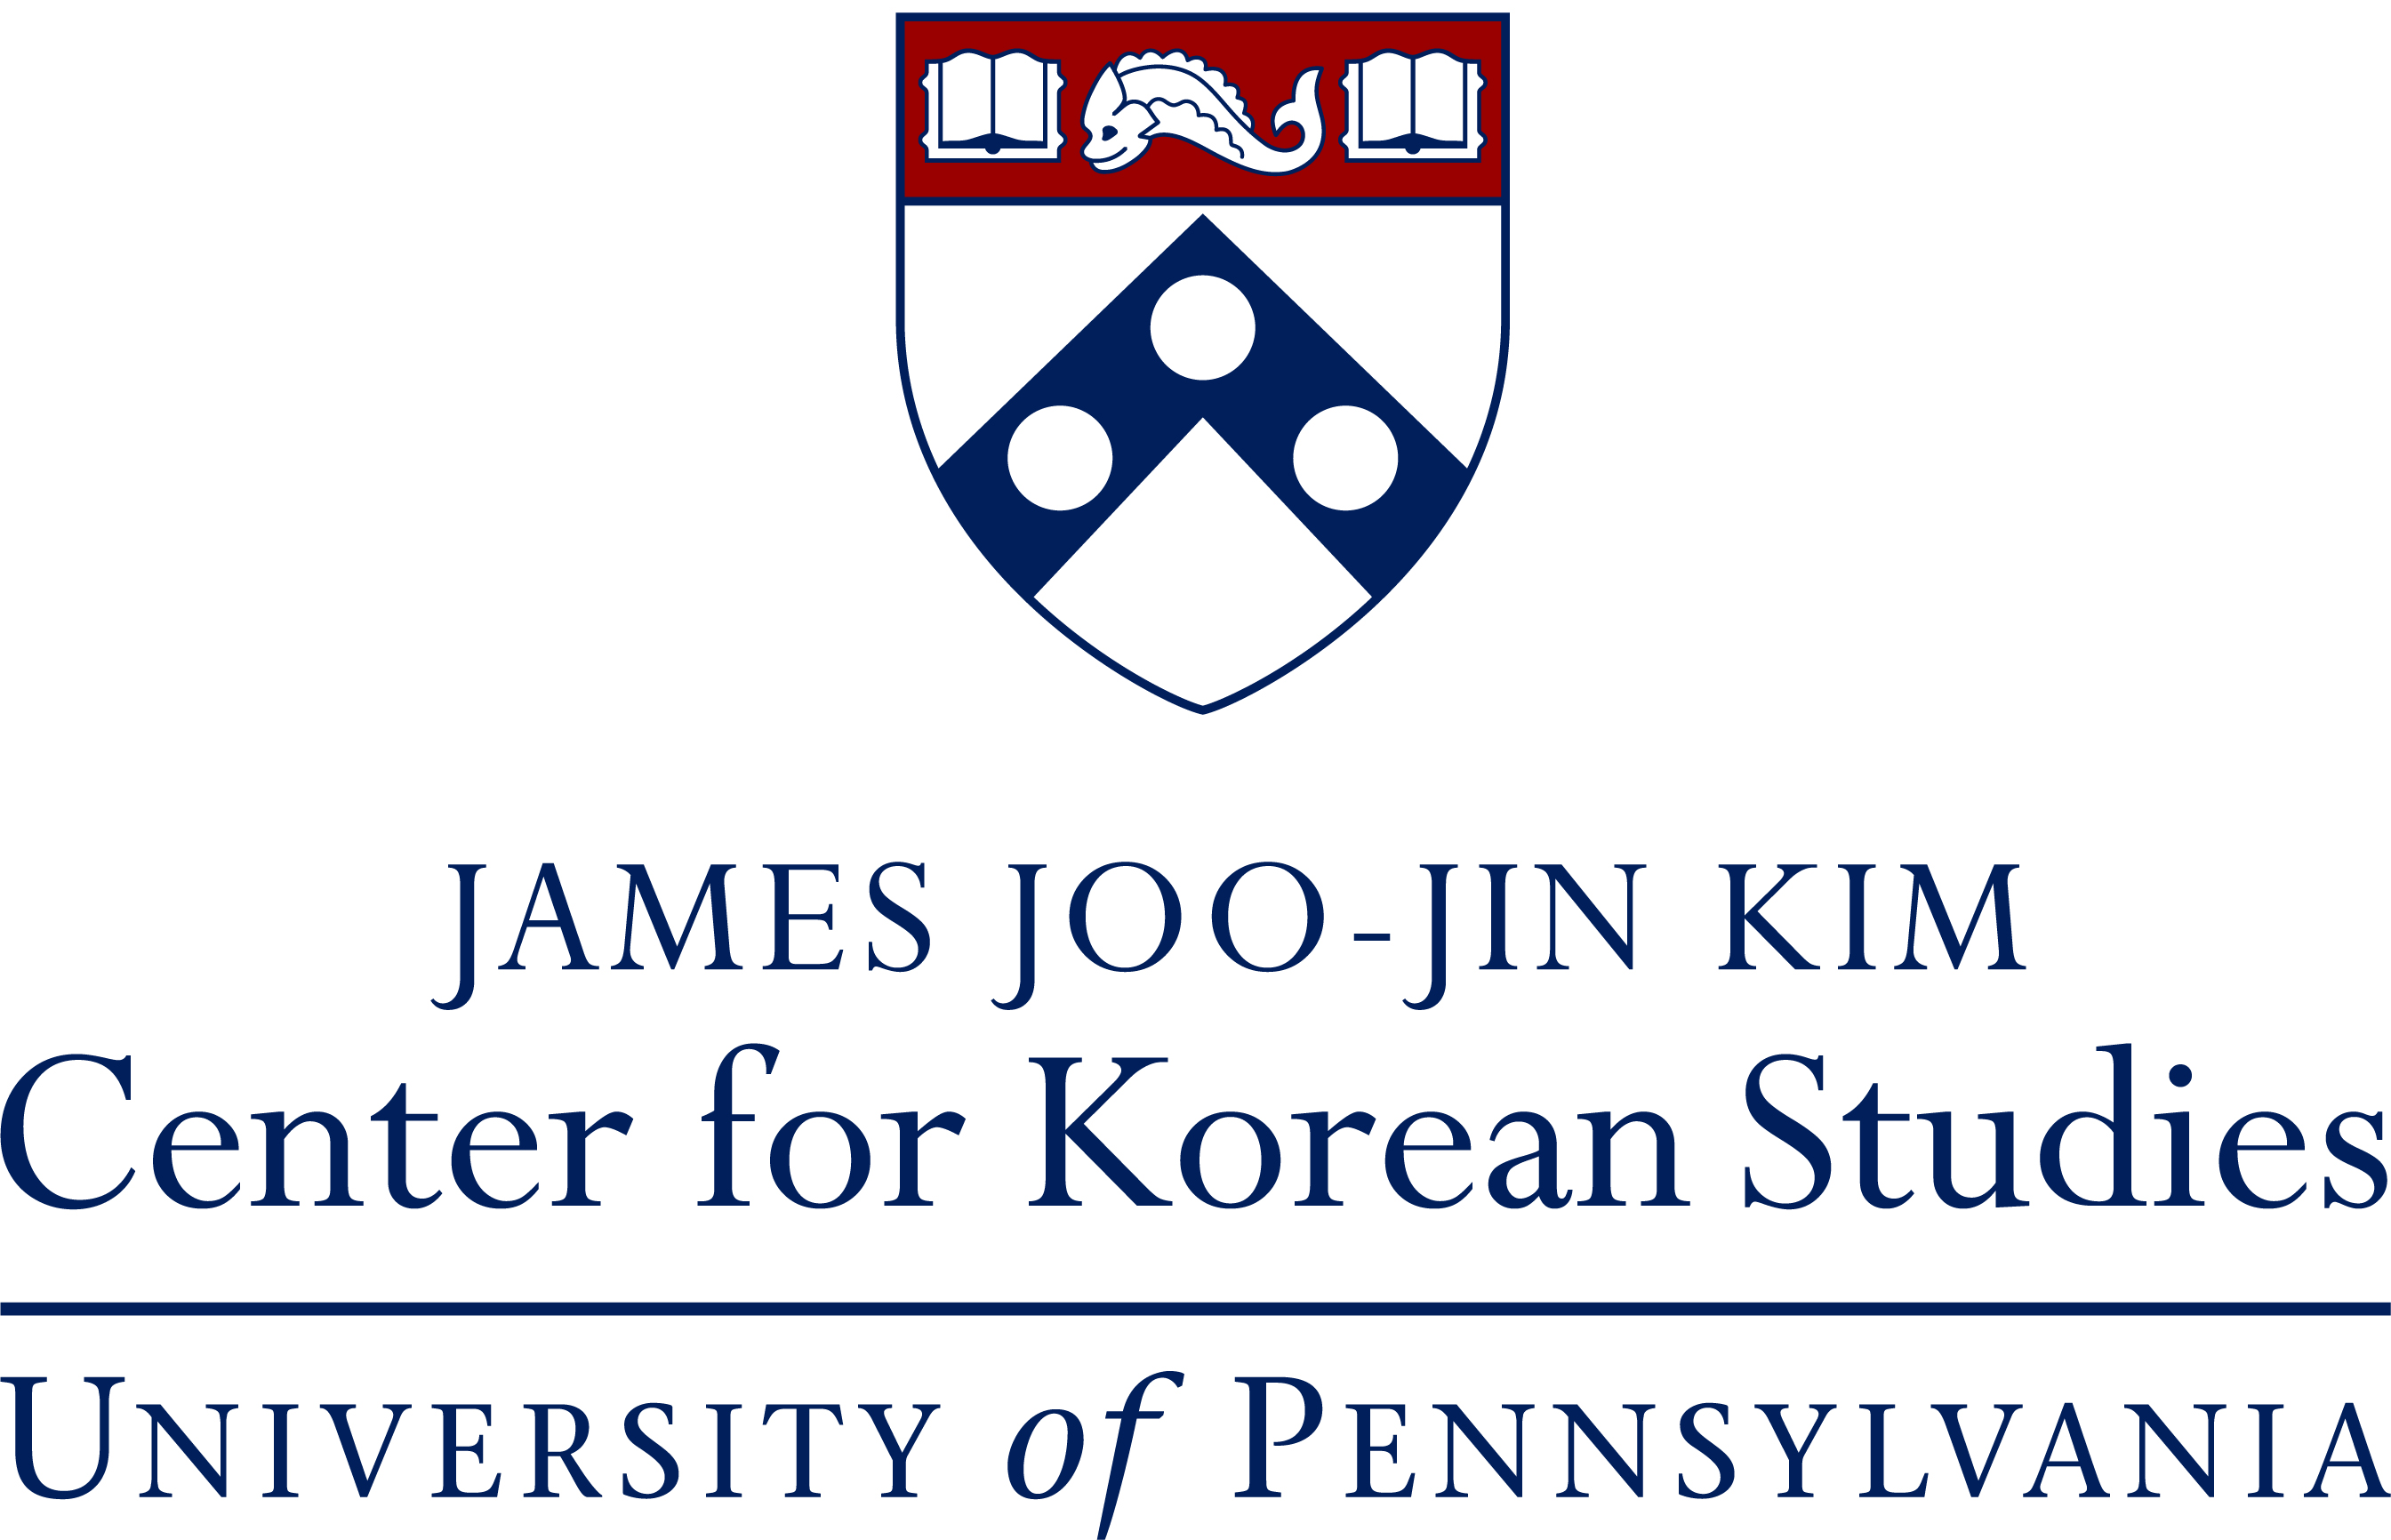 Center for Korean Studies logo.